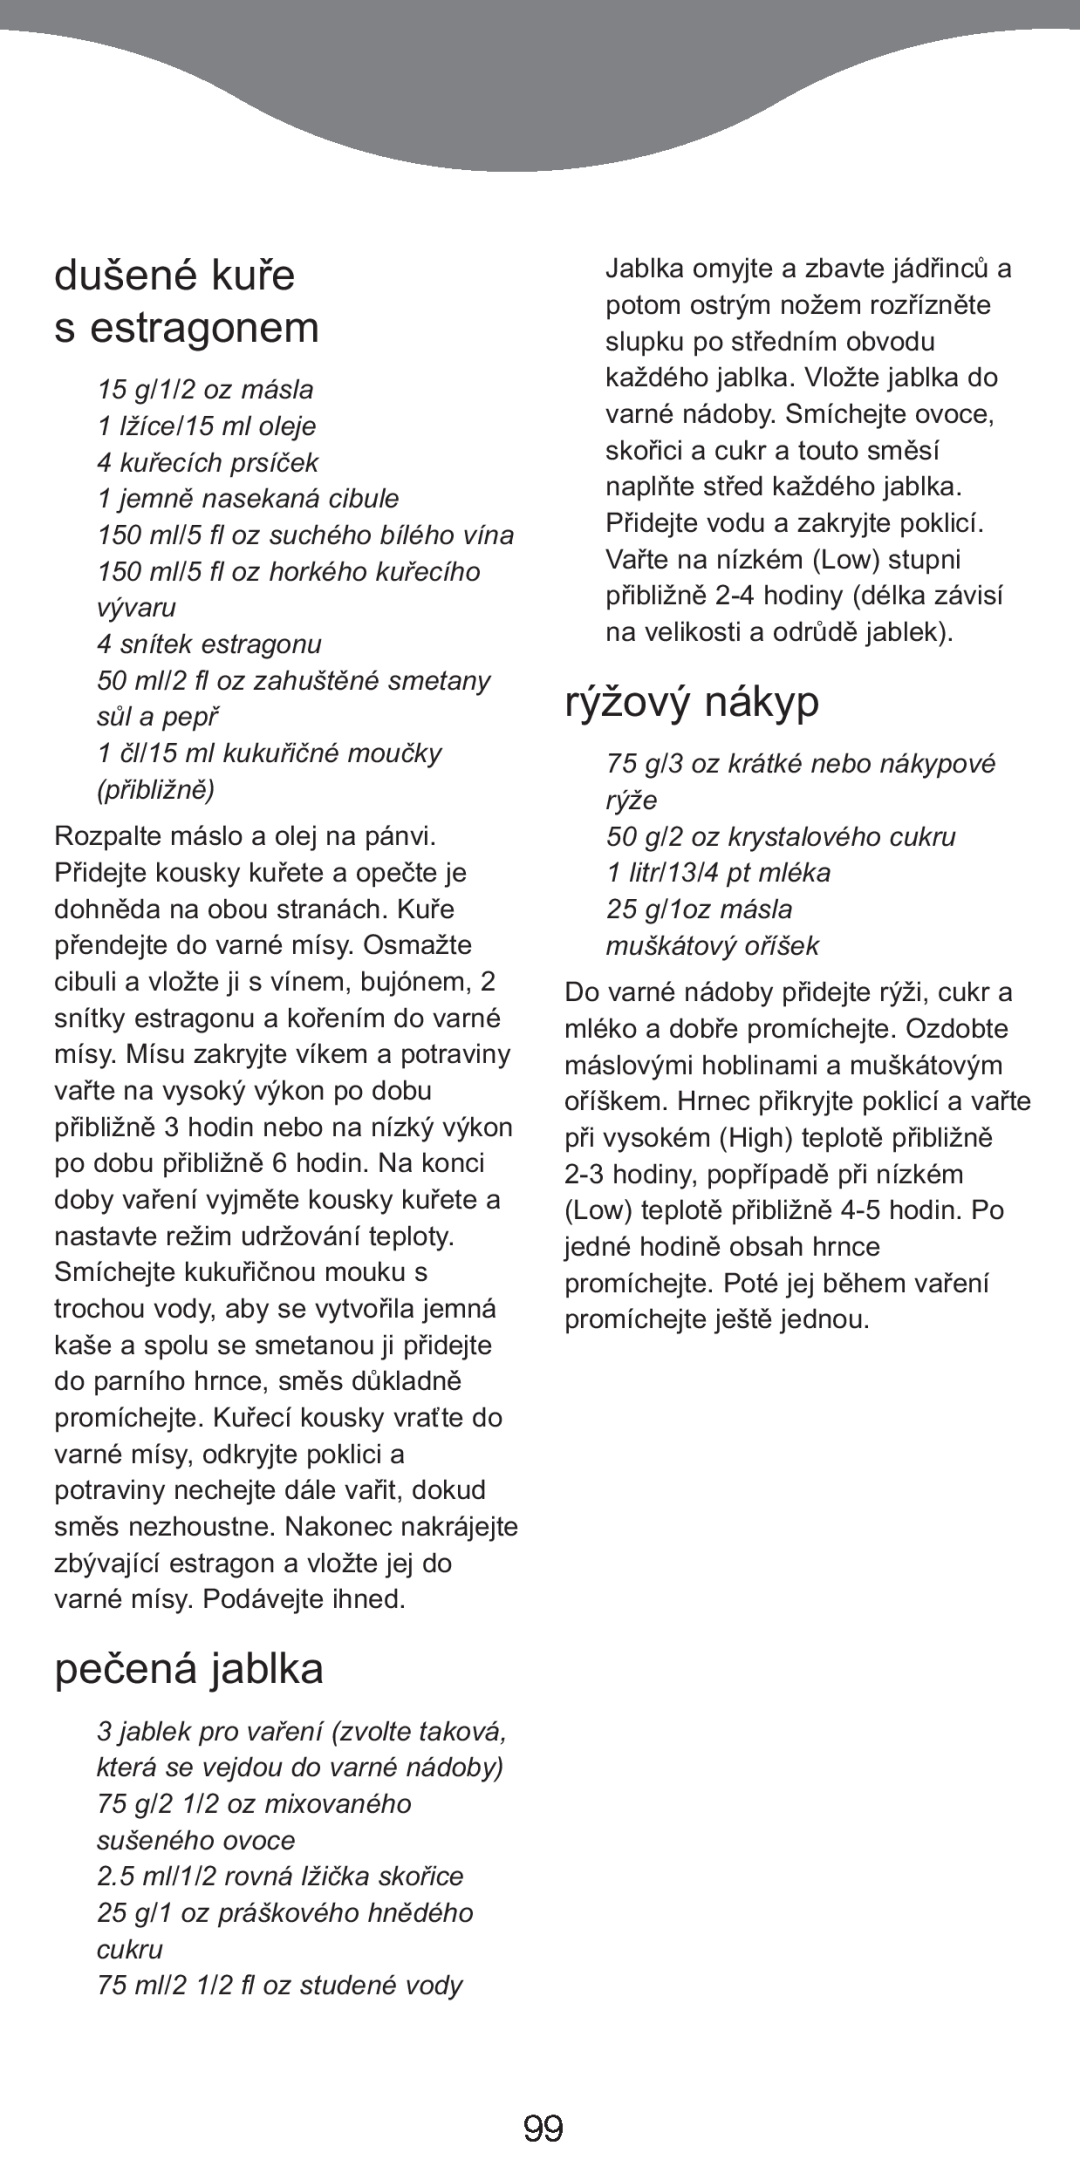 Kenwood CP707, CP706 manual dušené kuře s estragonem, pečená jablka, rýžový nákyp 